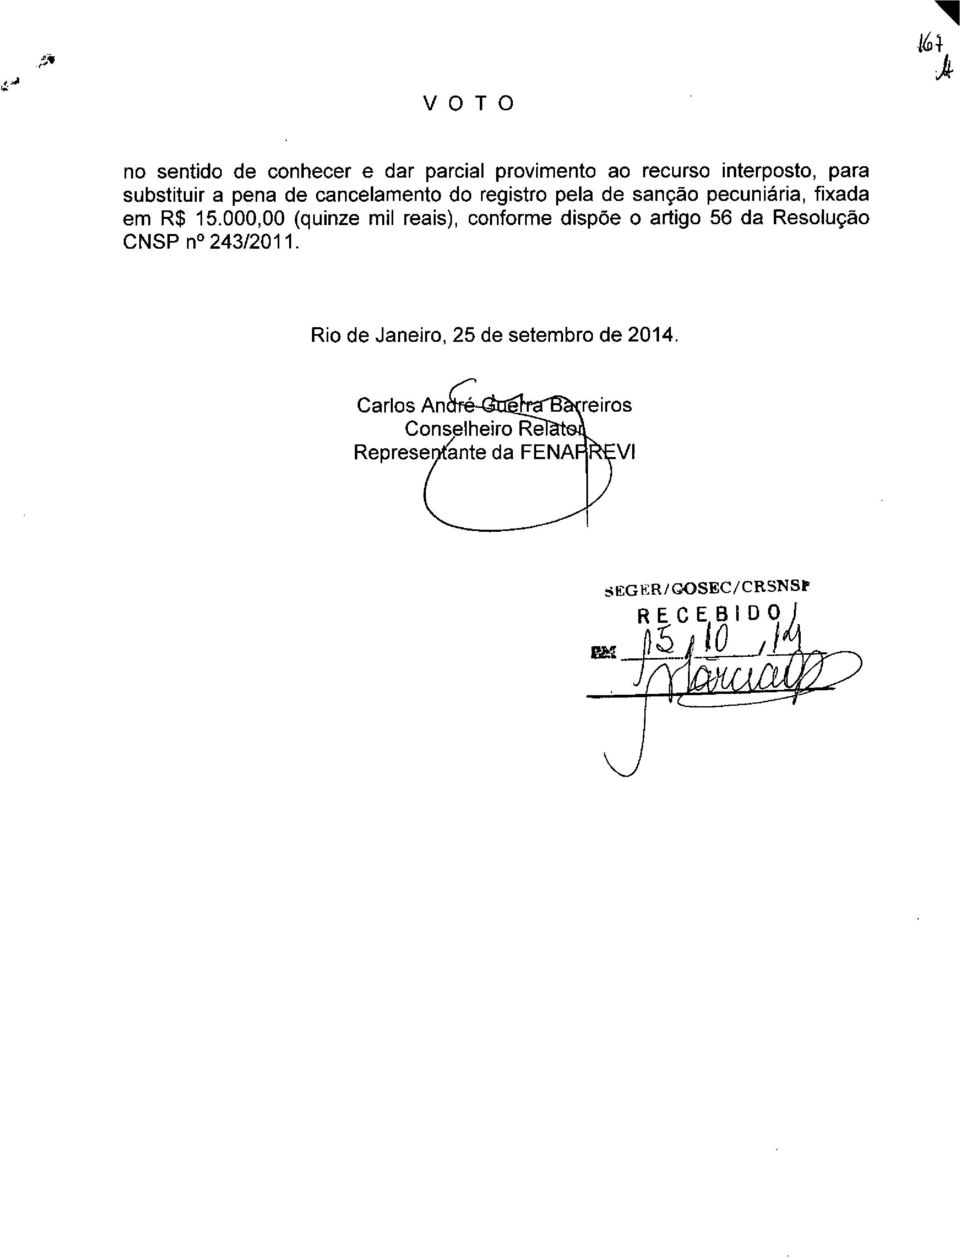 000,00 (quinze mil reais), conforme dispoe o artigo 56 da Resoluçao CNSP n 243/2011.